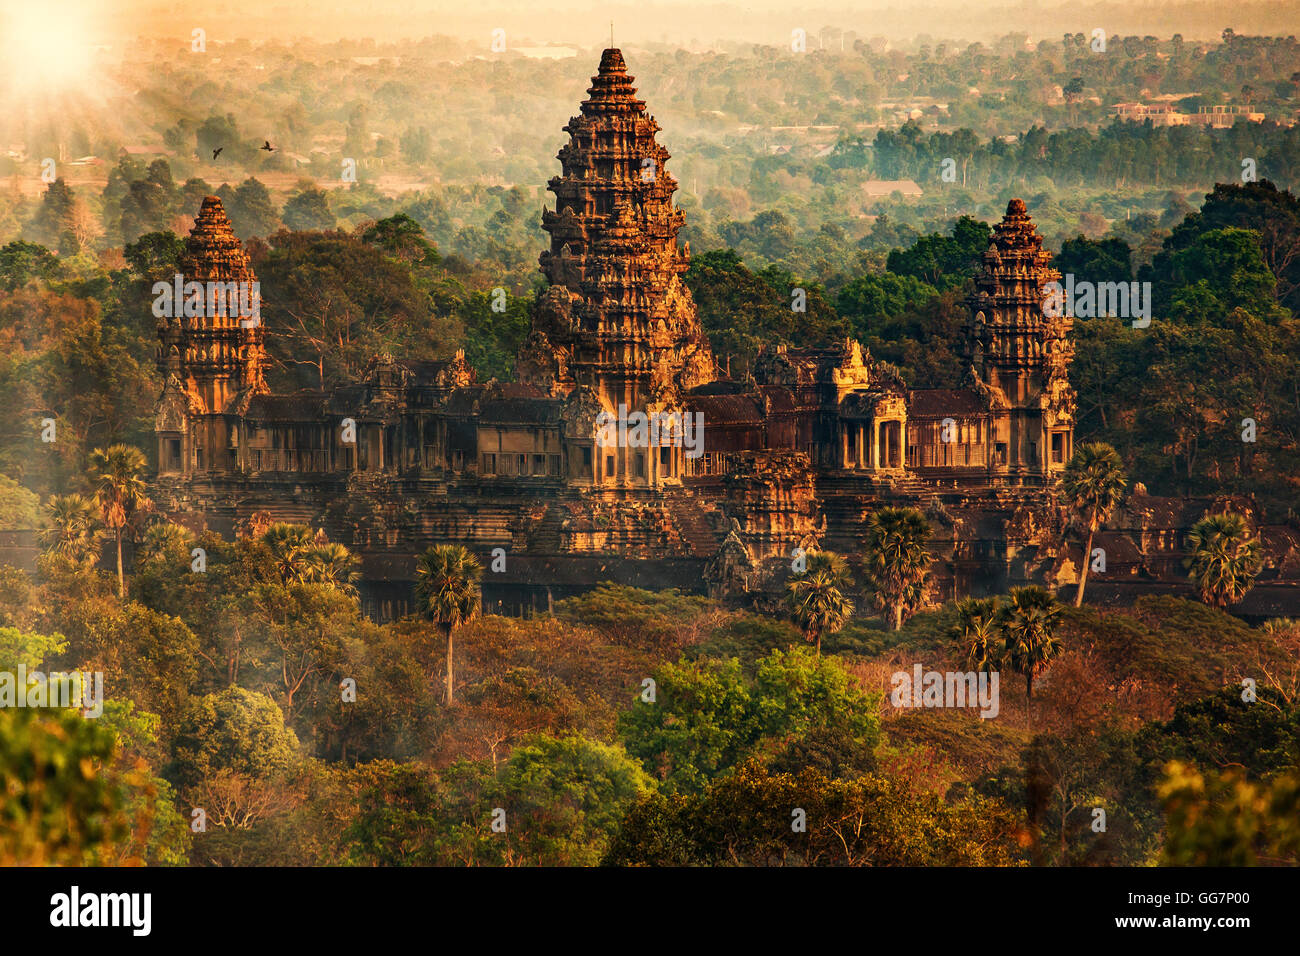 Tempel von Angkor Wat, Siem reap, Kambodscha. Stockfoto